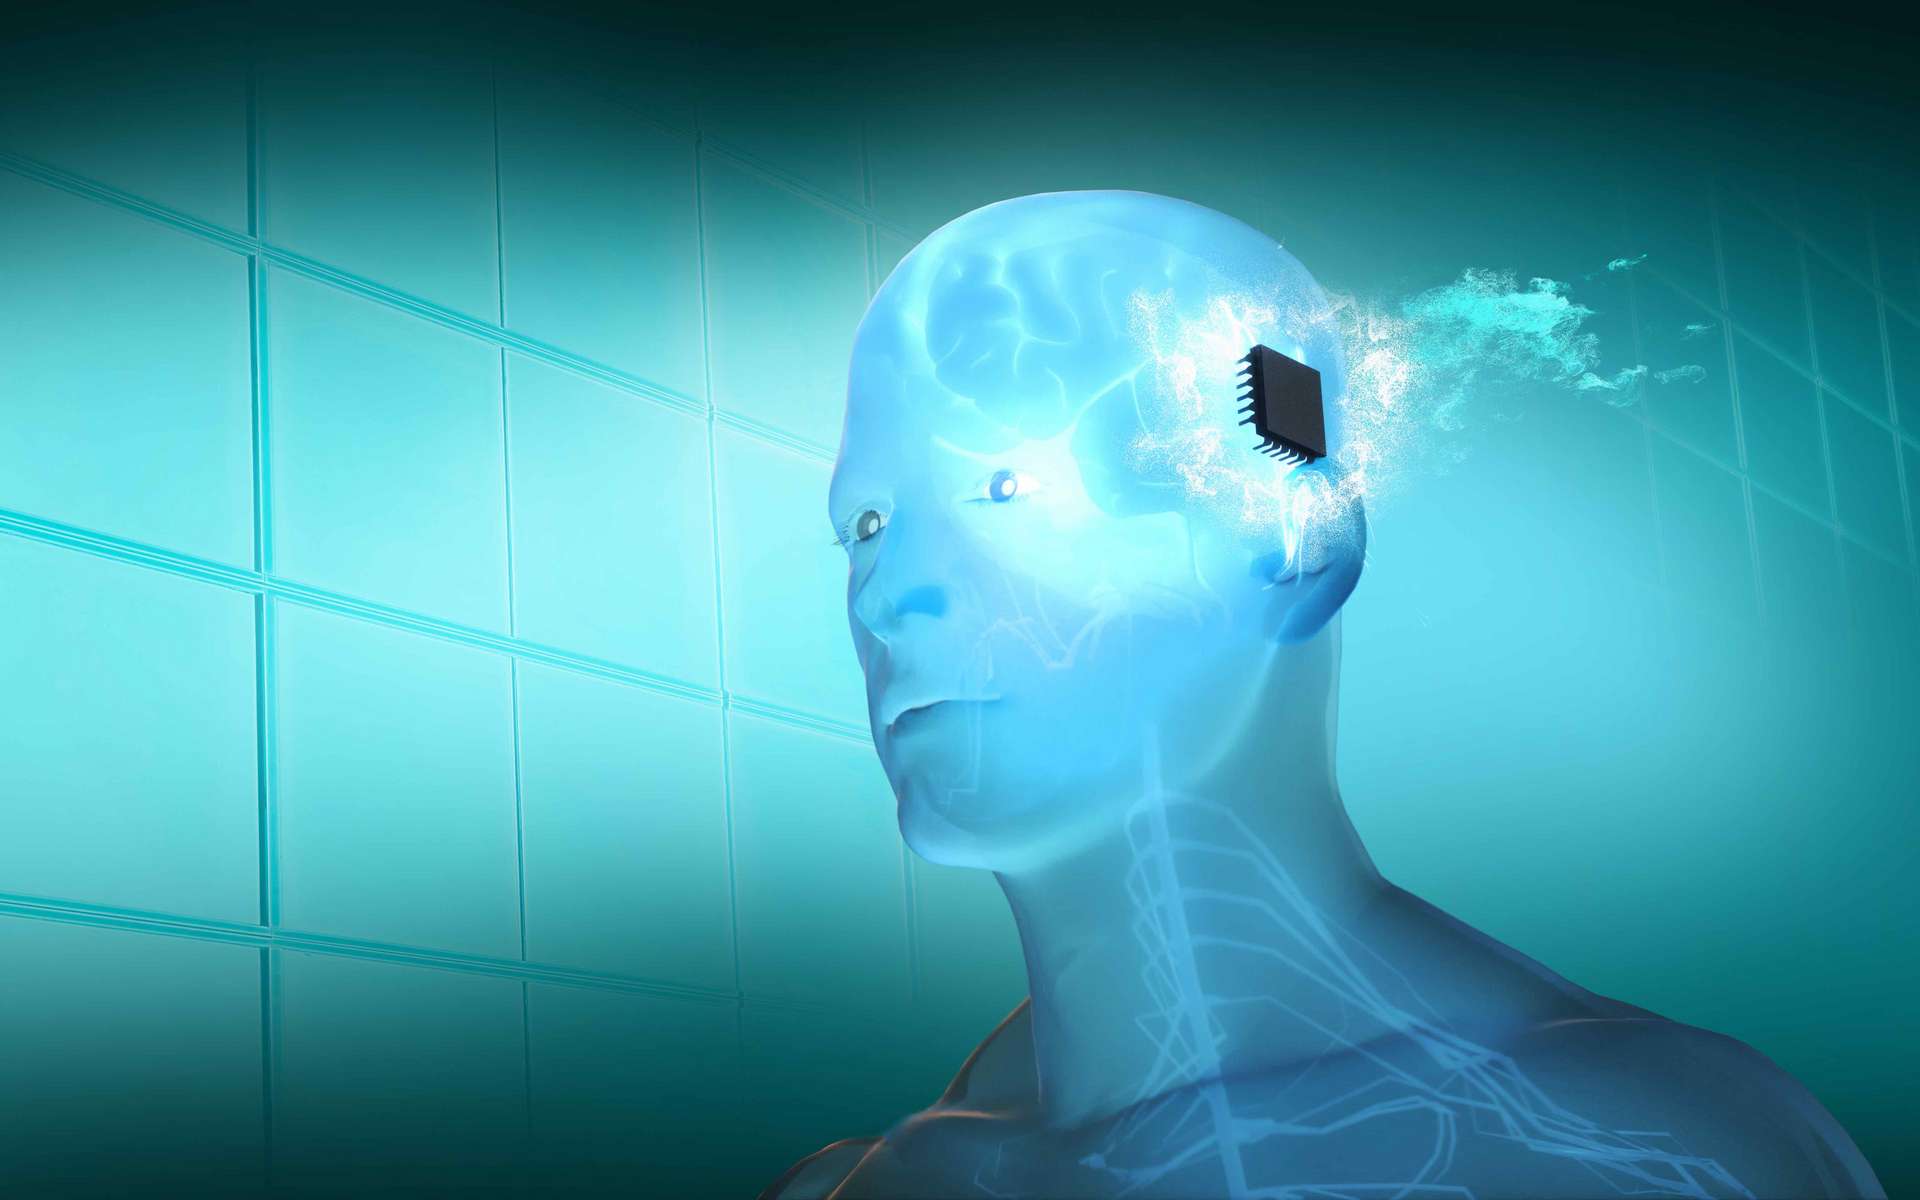 Les implants cérébraux sont-ils dangereux pour la santé ?